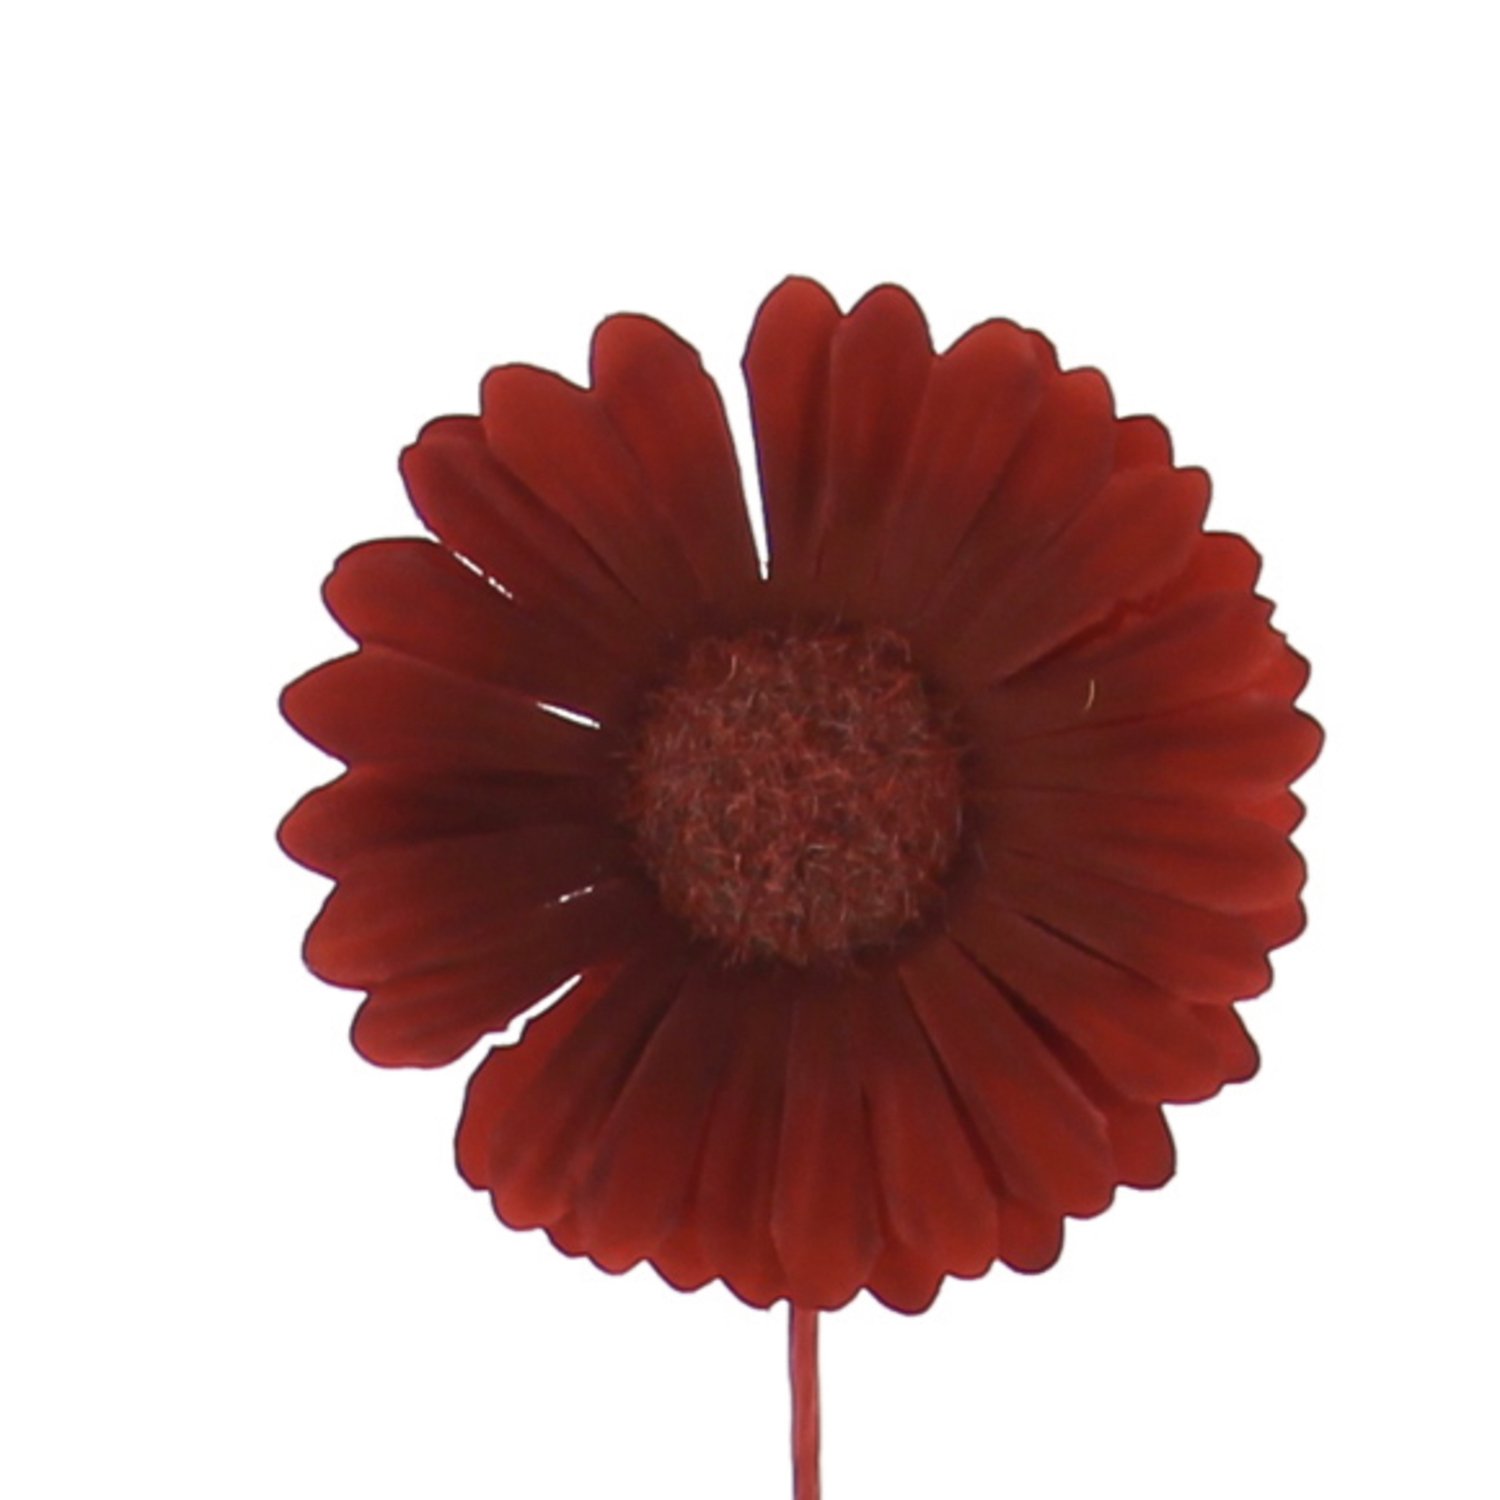 Germini red coloured flower decoration 13 x 6.5cm - 96pcs